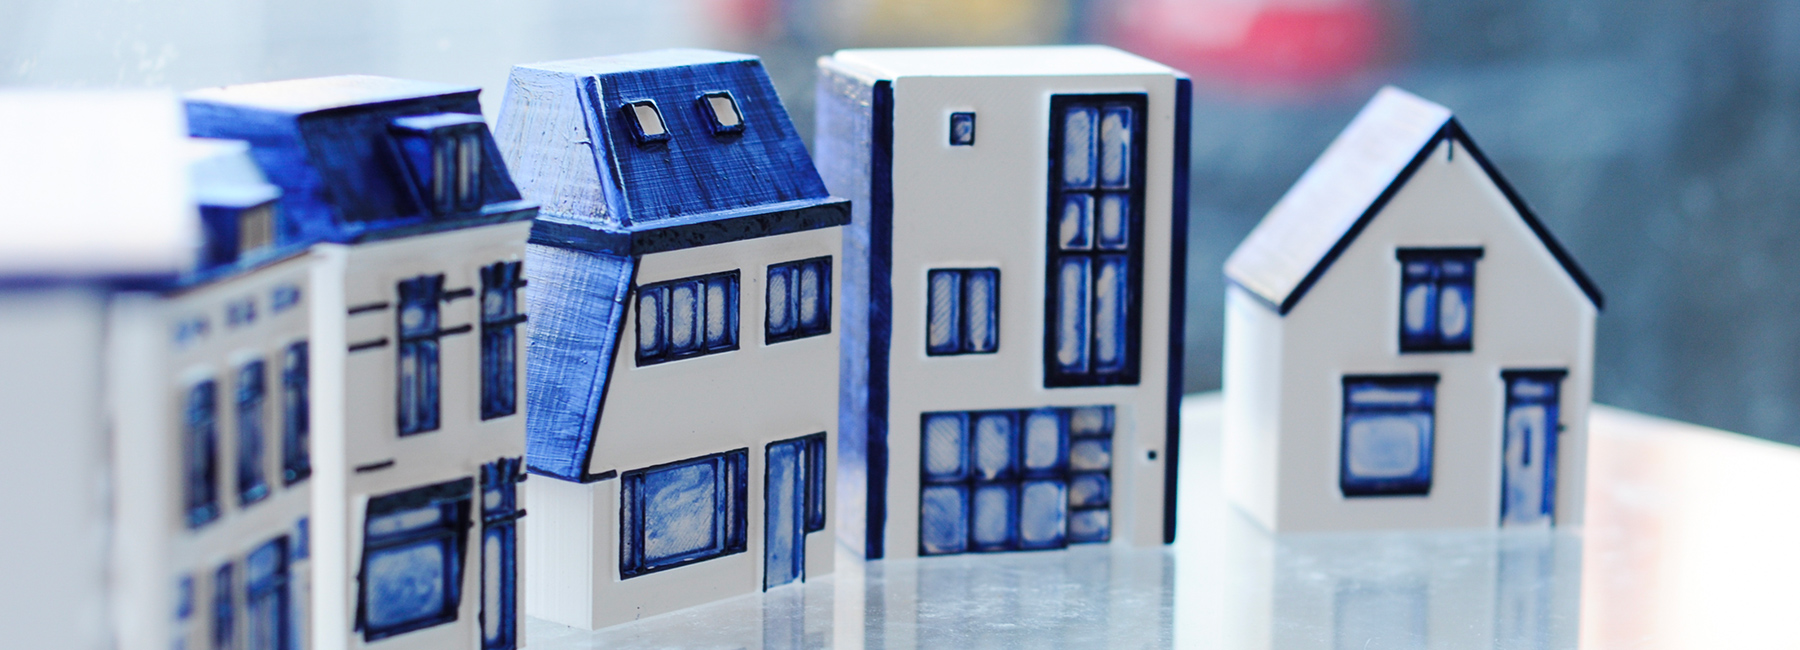 ساخت خانه های مینیاتوری با استفاده از پرینترهای سه بعدی